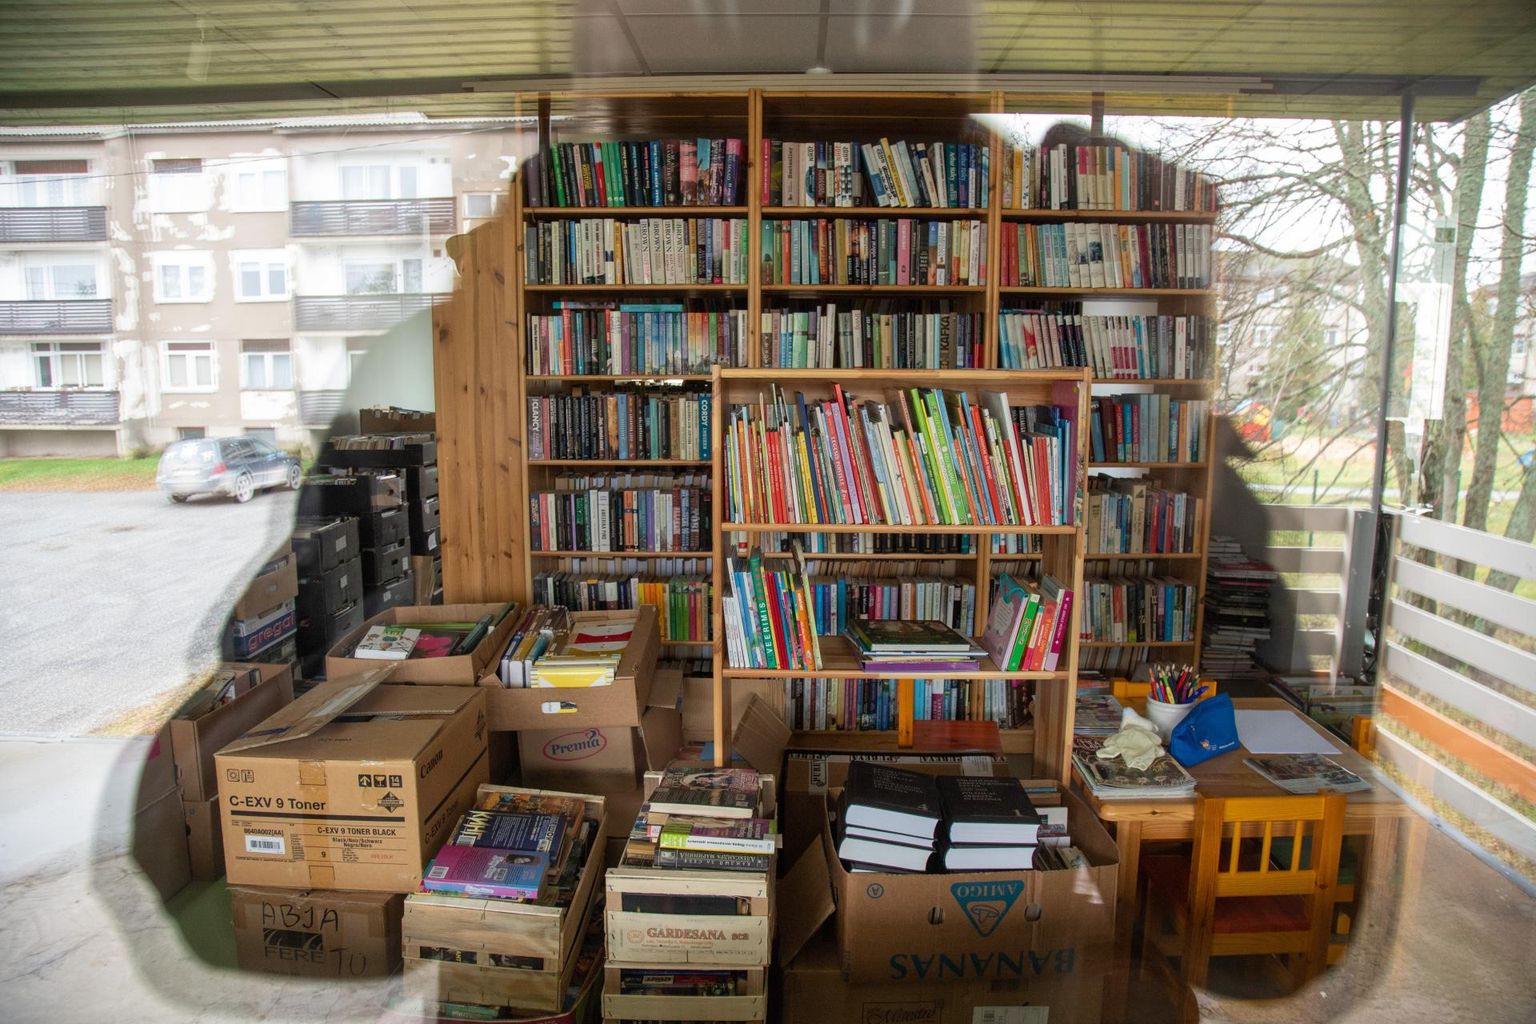 Õisu raamatukogu aknast sisse piiludes näeb külastaja kastides kuhjas riiulisse sättimata raamatuid.

FOTO: Marko Saarm